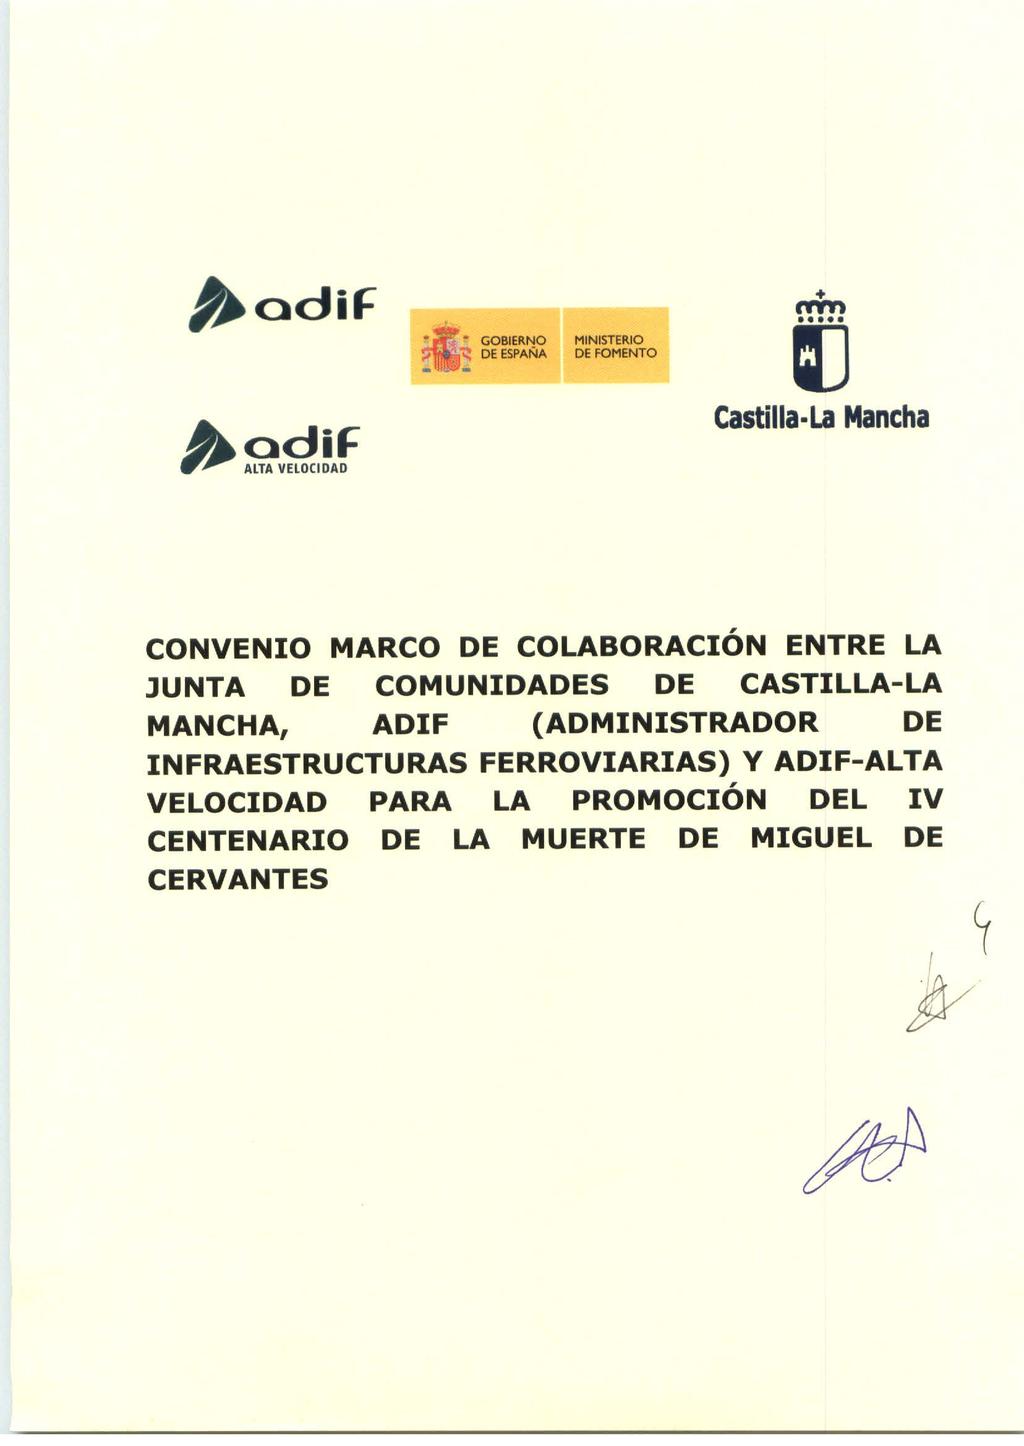 b adif rtwn GOBIERNO MINISTERIO DE ESPAÑA DE FOMENTO IJ Castilla-La Mancha CONVENIO MARCO DE COLABORACIÓN ENTRE LA JUNTA DE COMUNIDADES DE CASTILLA-LA